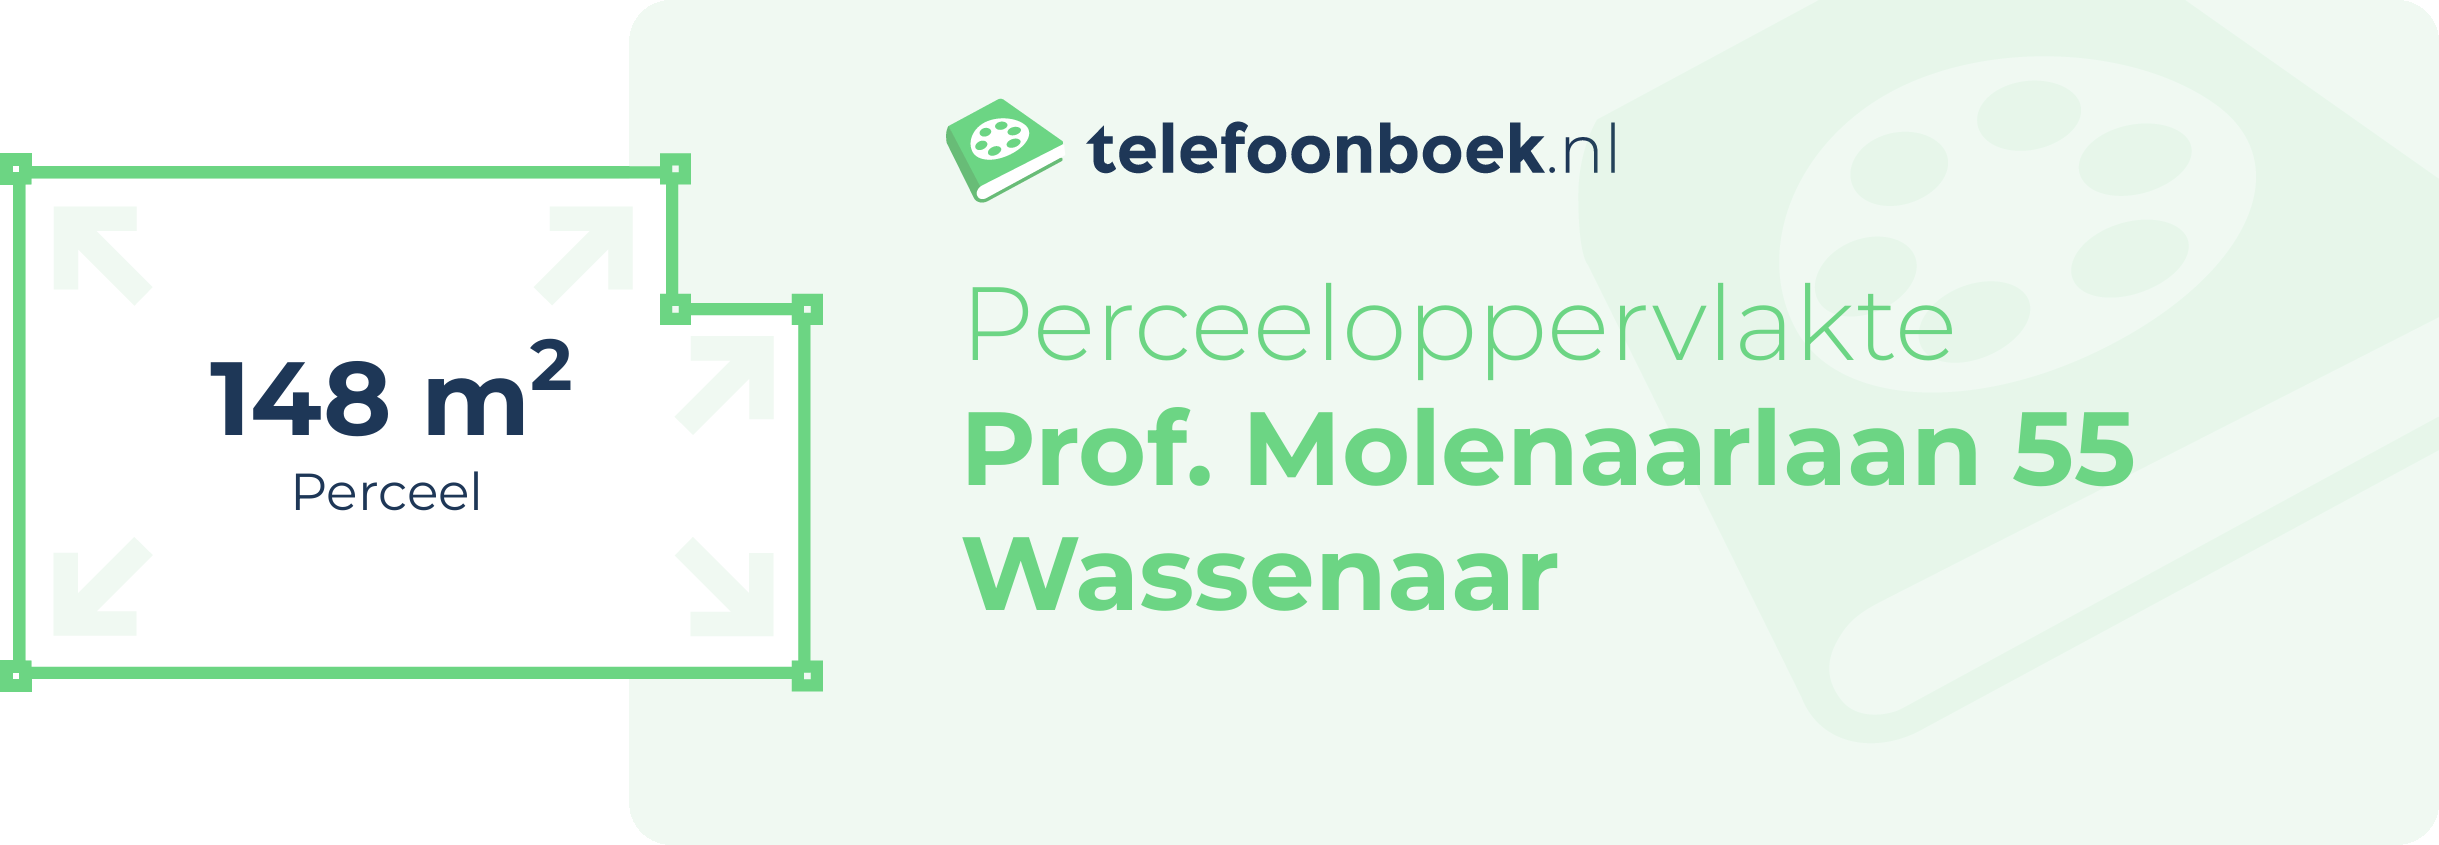 Perceeloppervlakte Prof. Molenaarlaan 55 Wassenaar